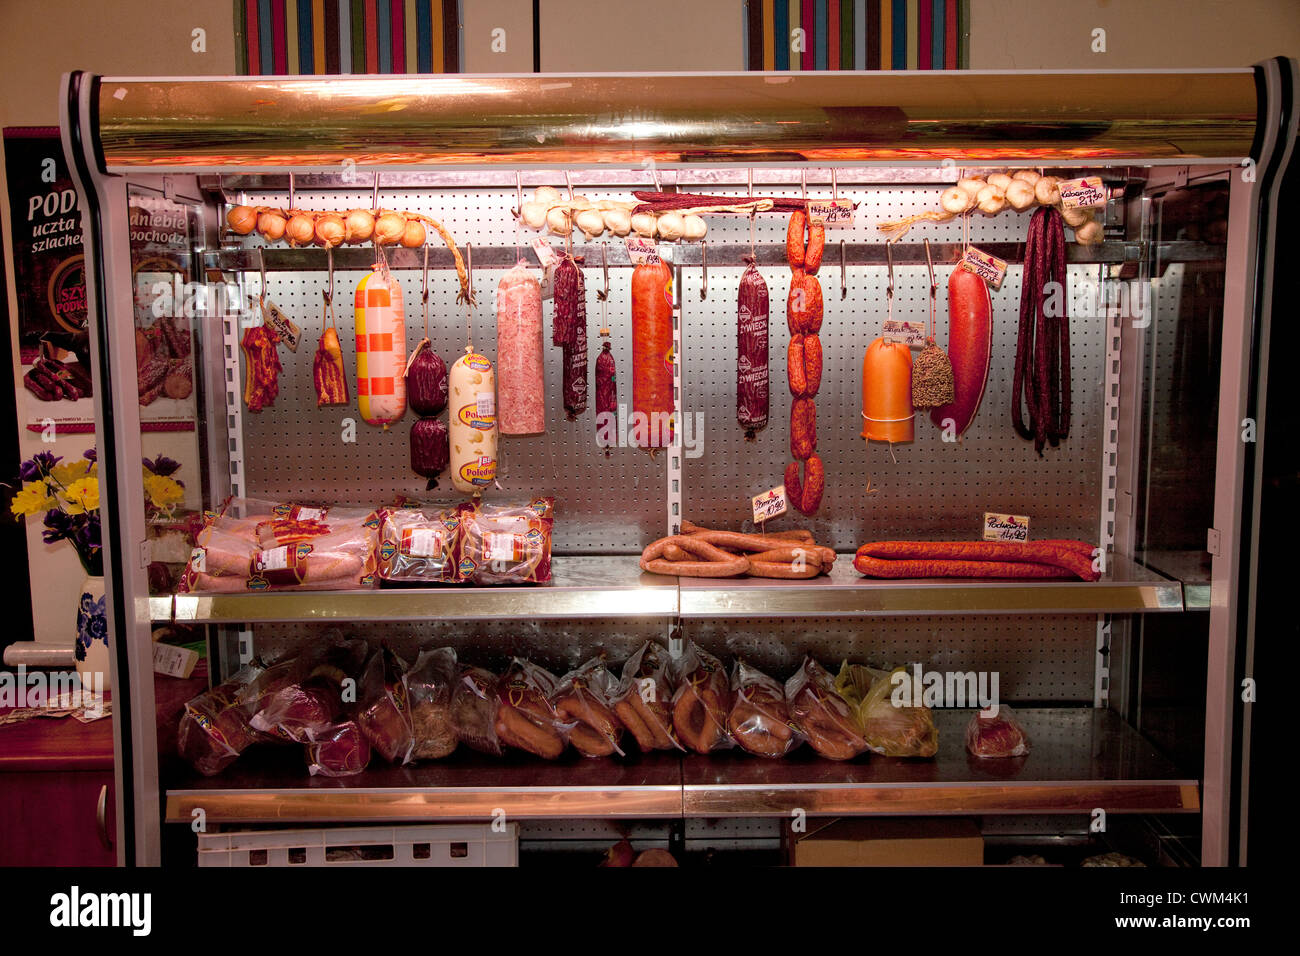 Polnische Fleischabteilung auf der Rückseite zeigt eine Vielzahl von Wurst und Kielbasa Lebensmittelgeschäft. Rzeczyca Zentralpolen Stockfoto